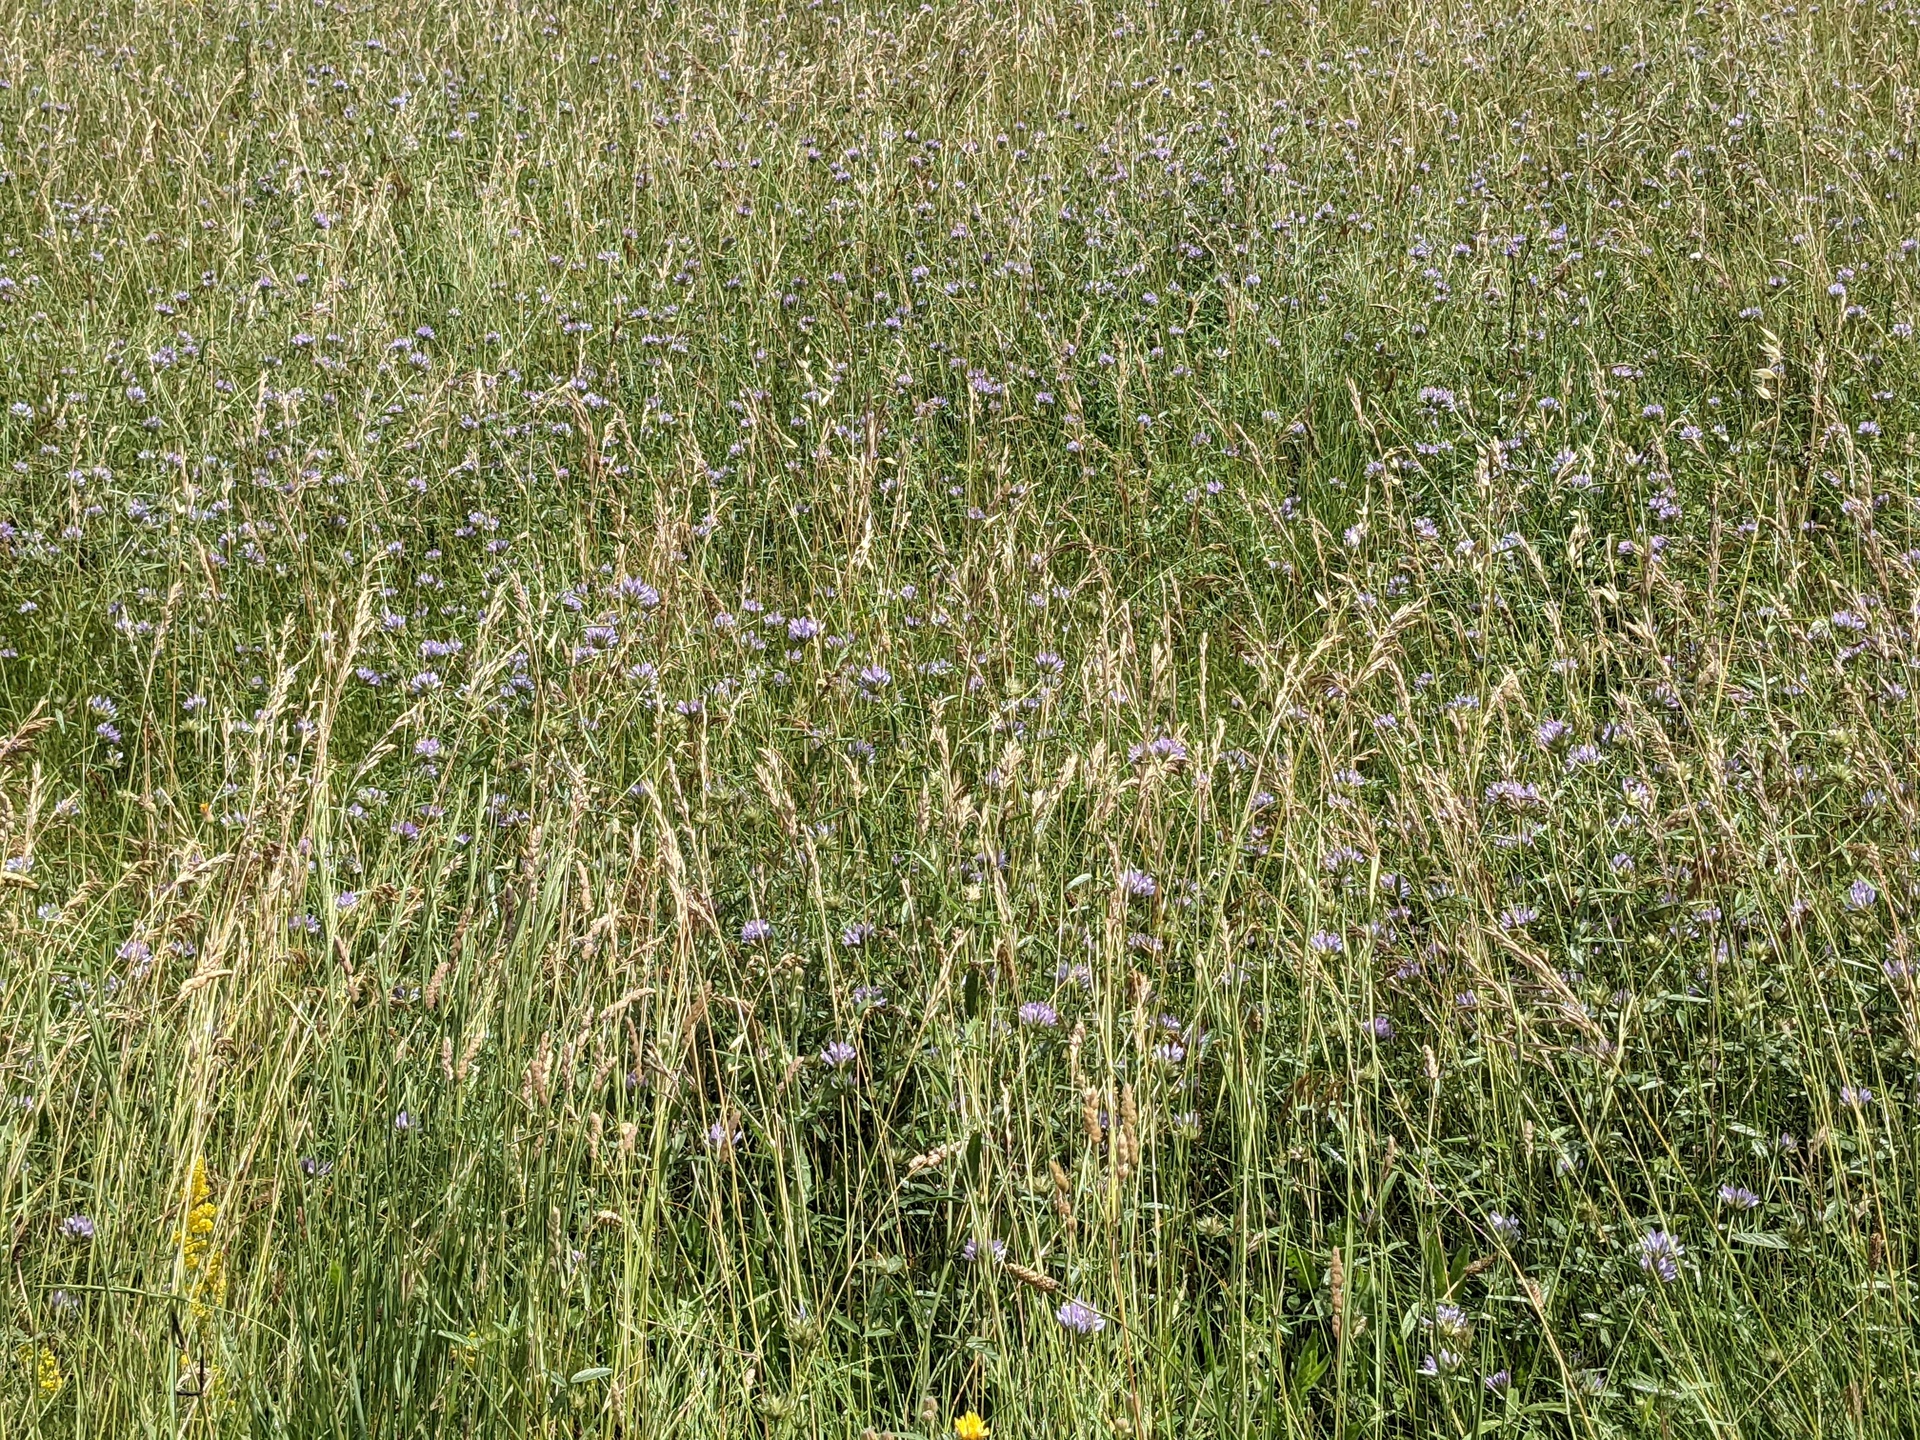 De hautes herbes avec quelques fleures de chardon